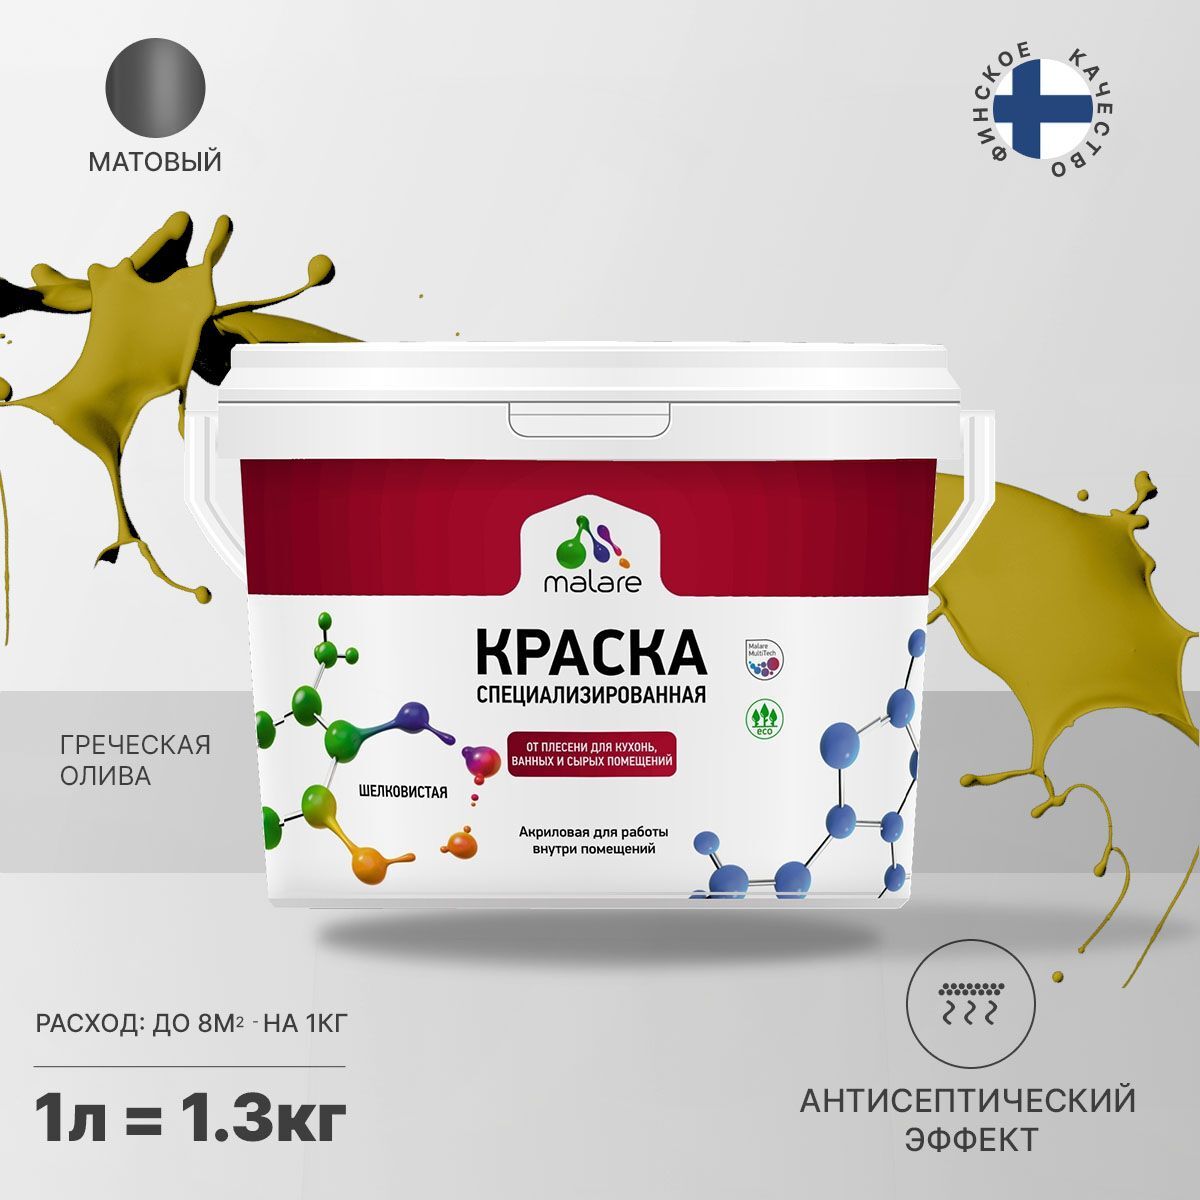 Краска Malare Professional Biosept от плесени и грибка, Акриловая, 1,3 кг греческая олива